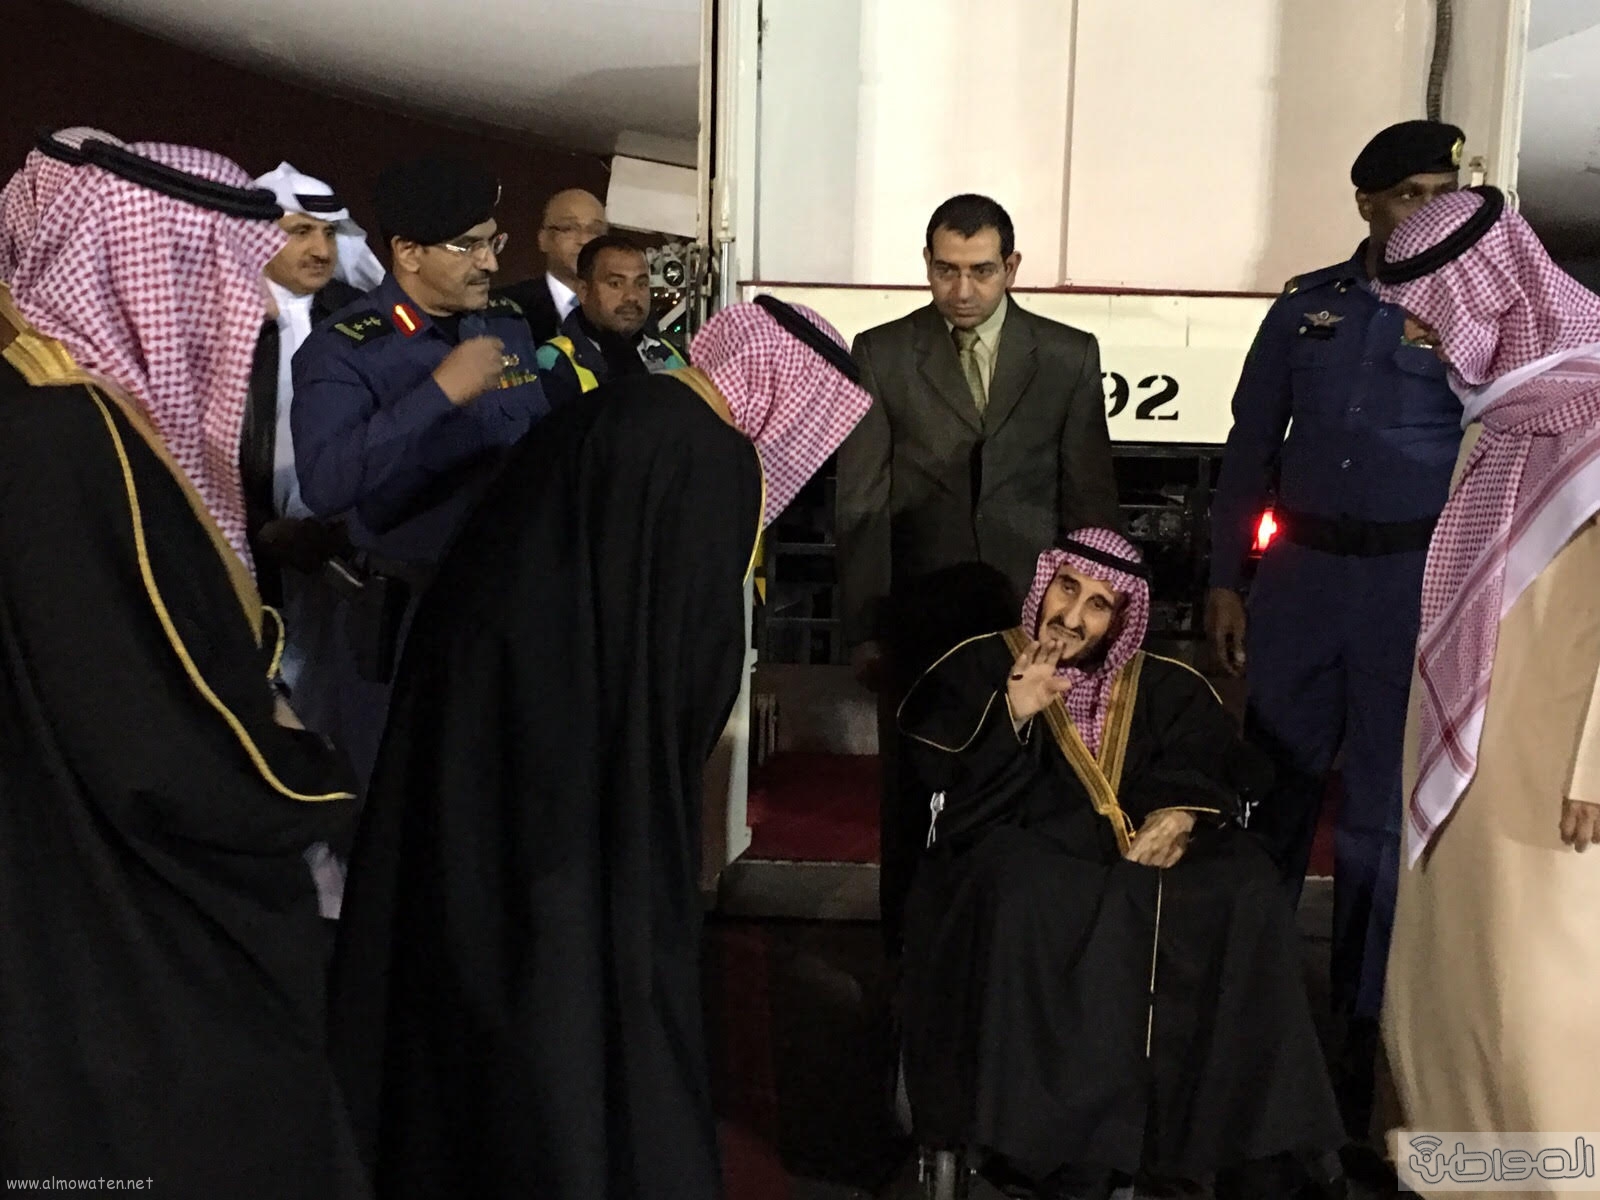 الأمير بندر بن عبدالعزيز يعود إلى الرياض بعد رحلة علاجية خارج المملكة